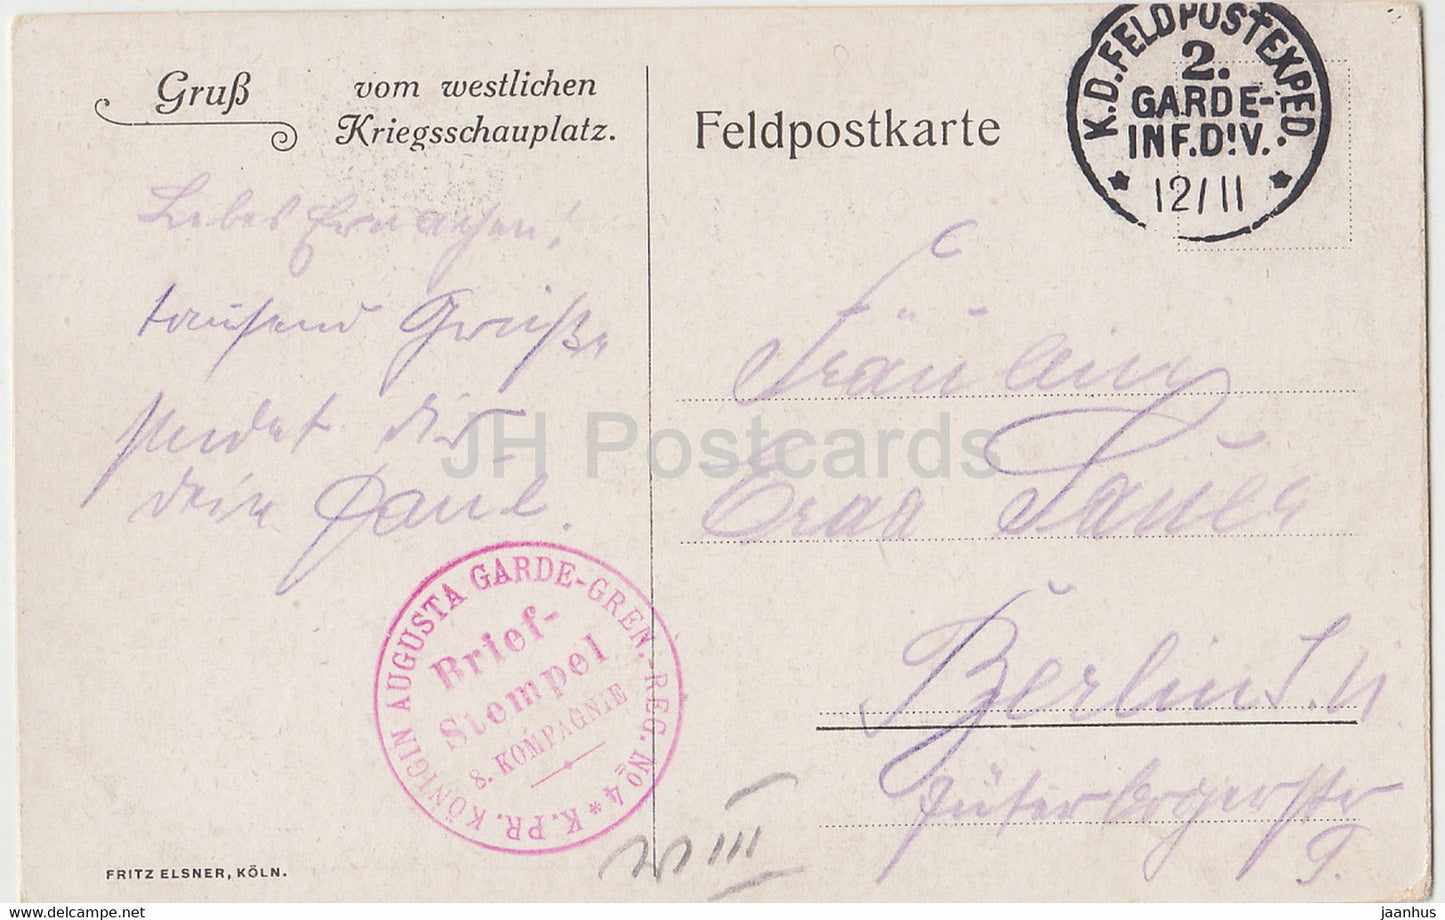 Gruss vom westlichen Kriegsschauplatz - Konigin Augusta Garde Gren Feldpostkarte - alte Ansichtskarte - Frankreich - gebraucht